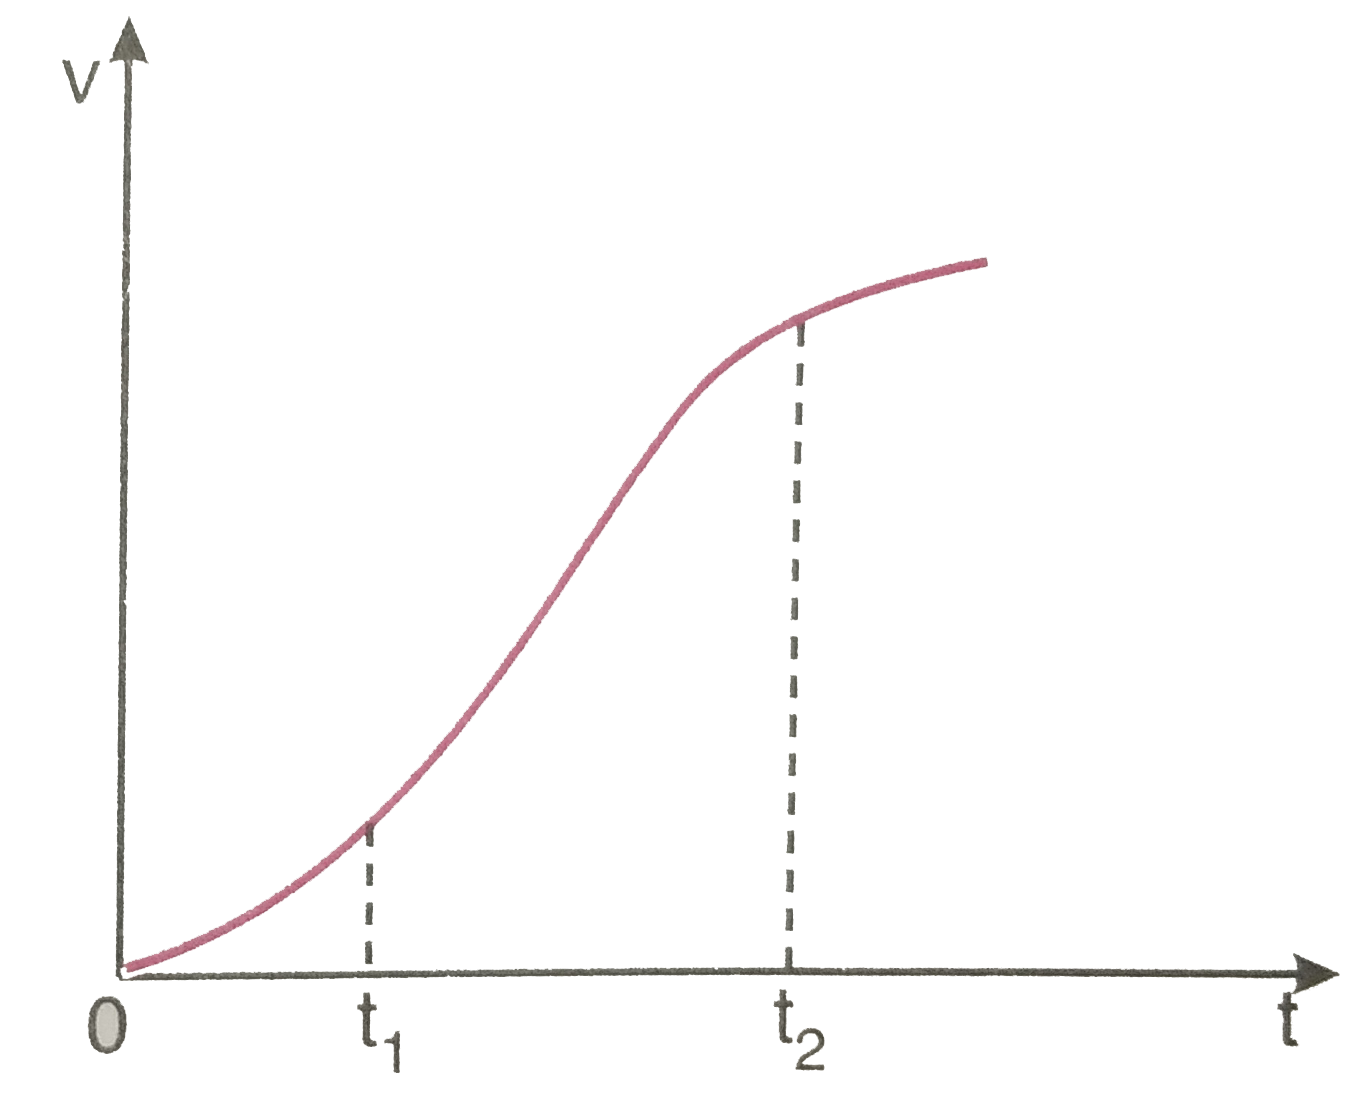 एक विमीय गति में किसी कण का वेग - समय ग्राफ चित्र 3.62 में दिखाया गया है नीचे दिए सूत्रों में t(1) से t(2) तक के समय अंतराल की अवधि में कण की गति का वर्णन करने के लिए कौन-से सूत्र सही है   x(t(2))=x(t(1))+v(t(1))(t(2)-t(1))+(1//2)a(t(2)-t(1))^(2)